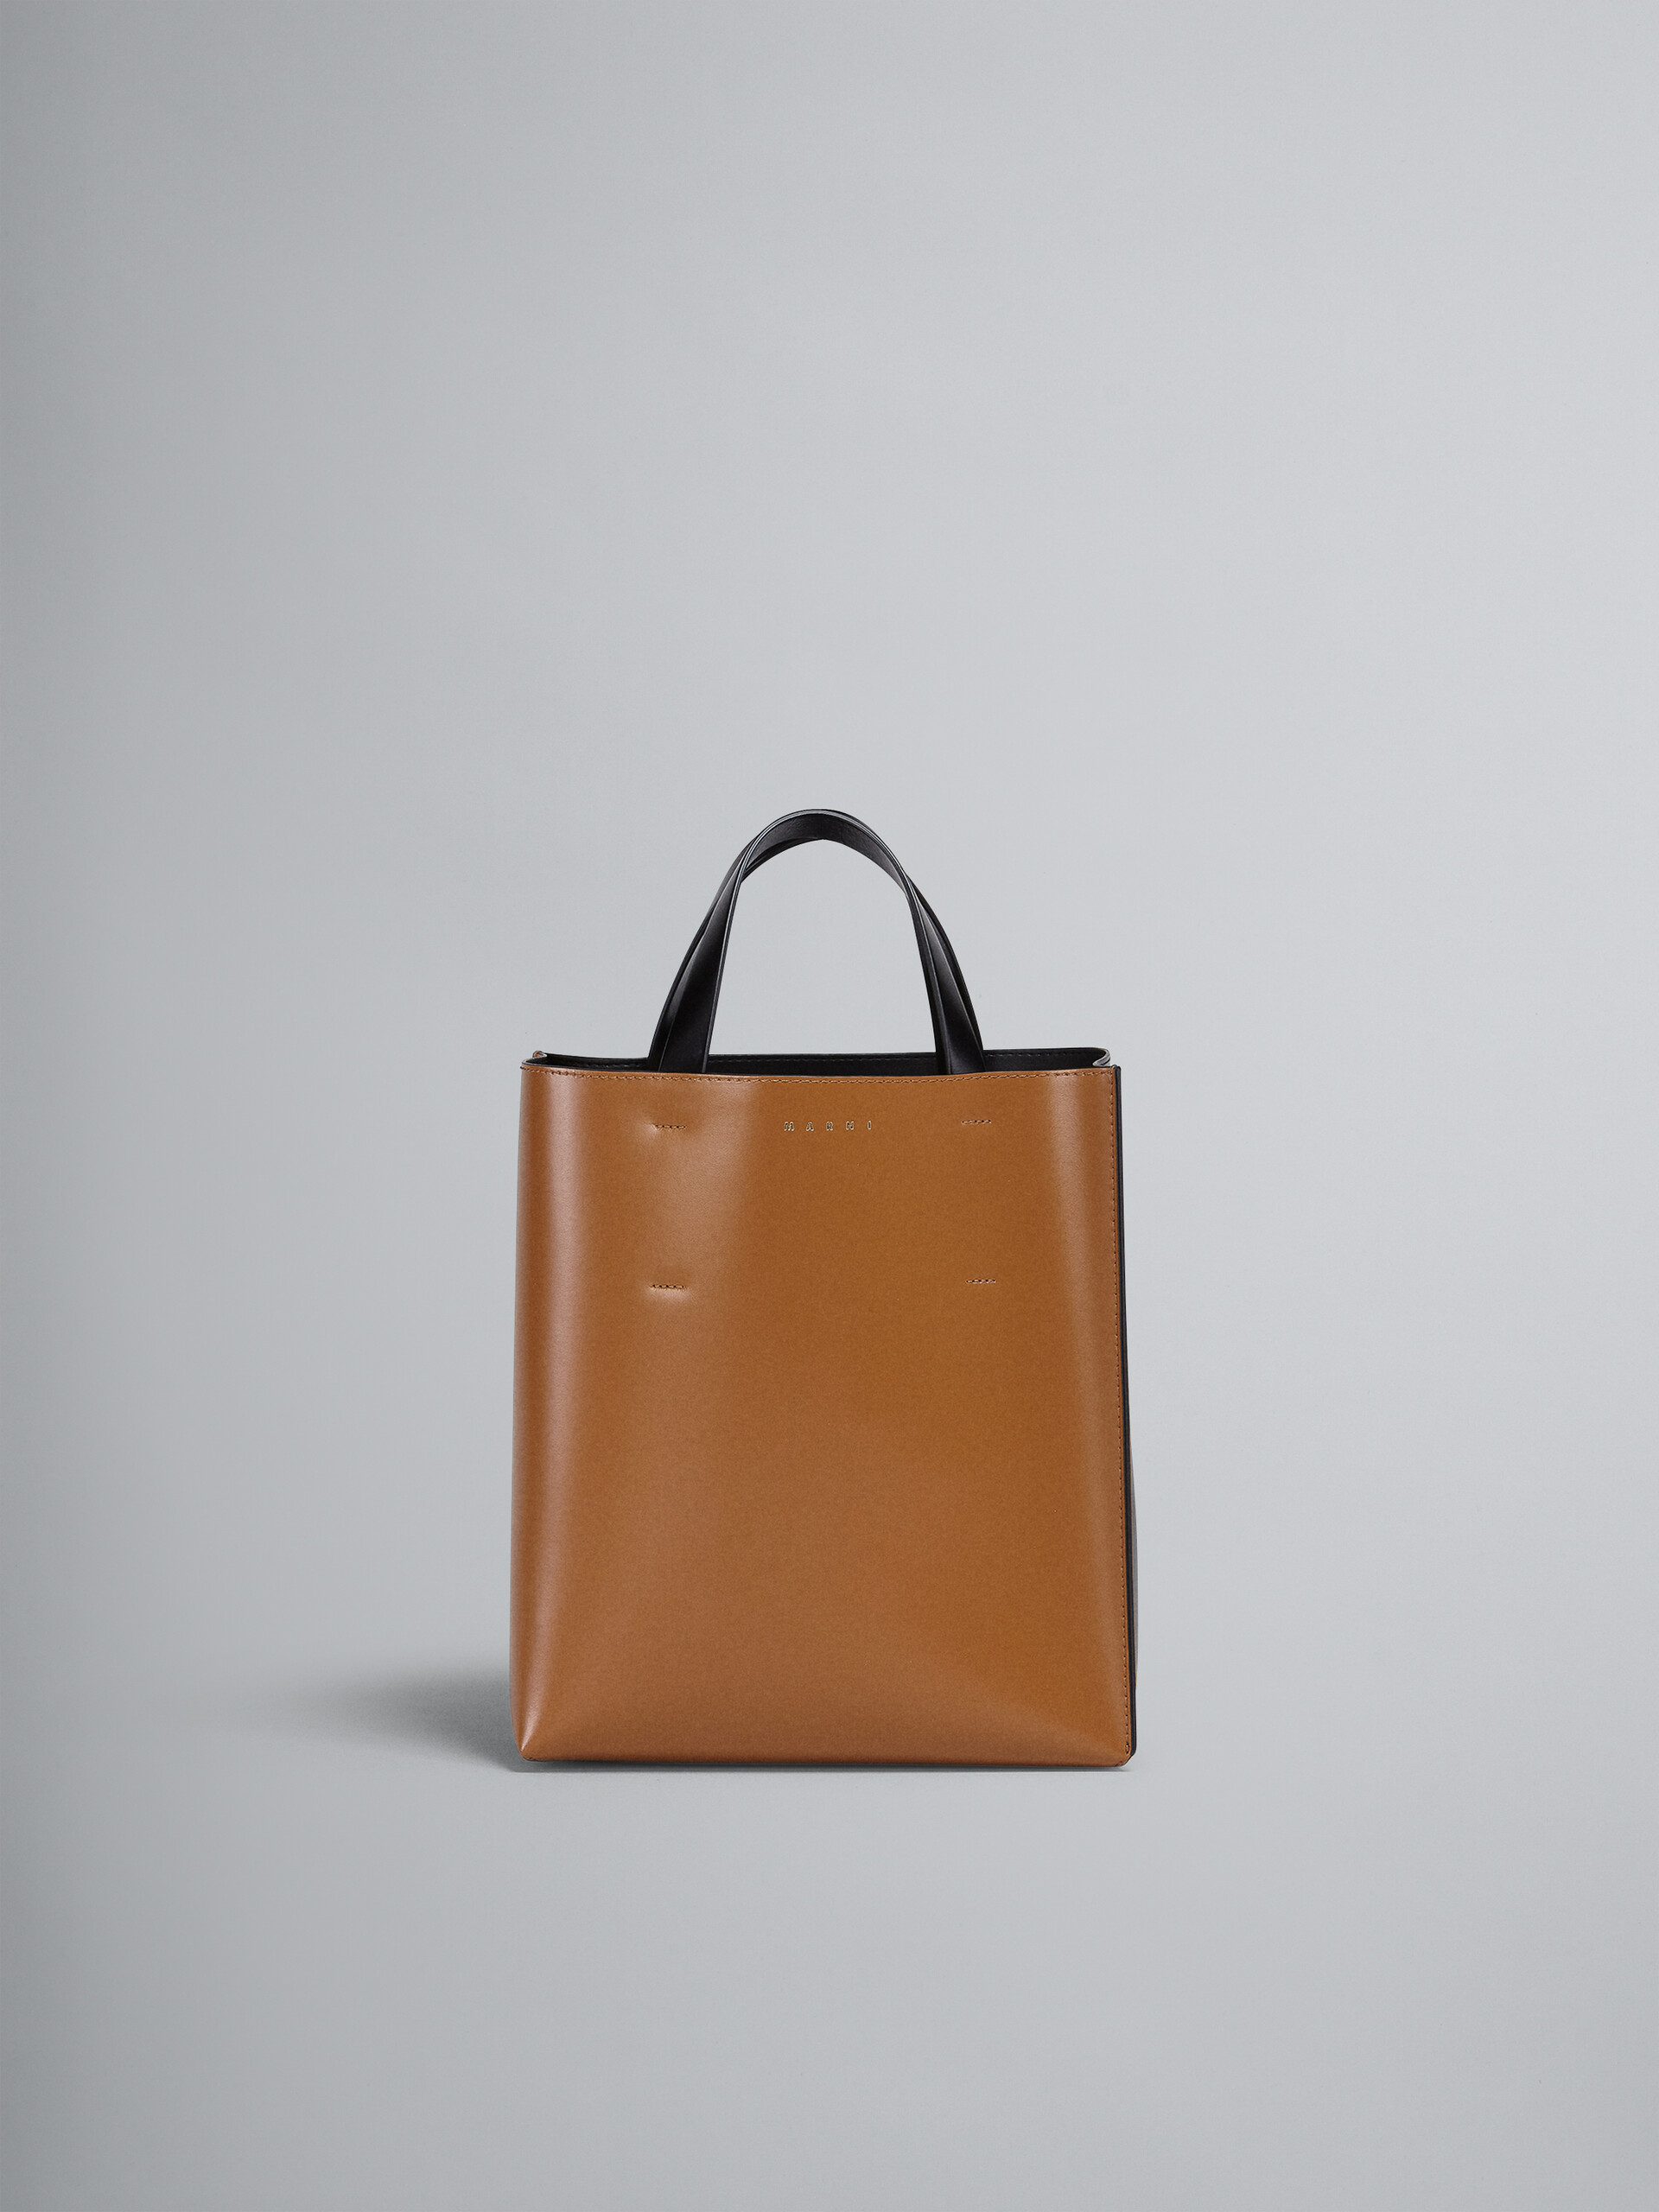 Petit sac MUSEO en cuir marron et noir - Sacs cabas - Image 1